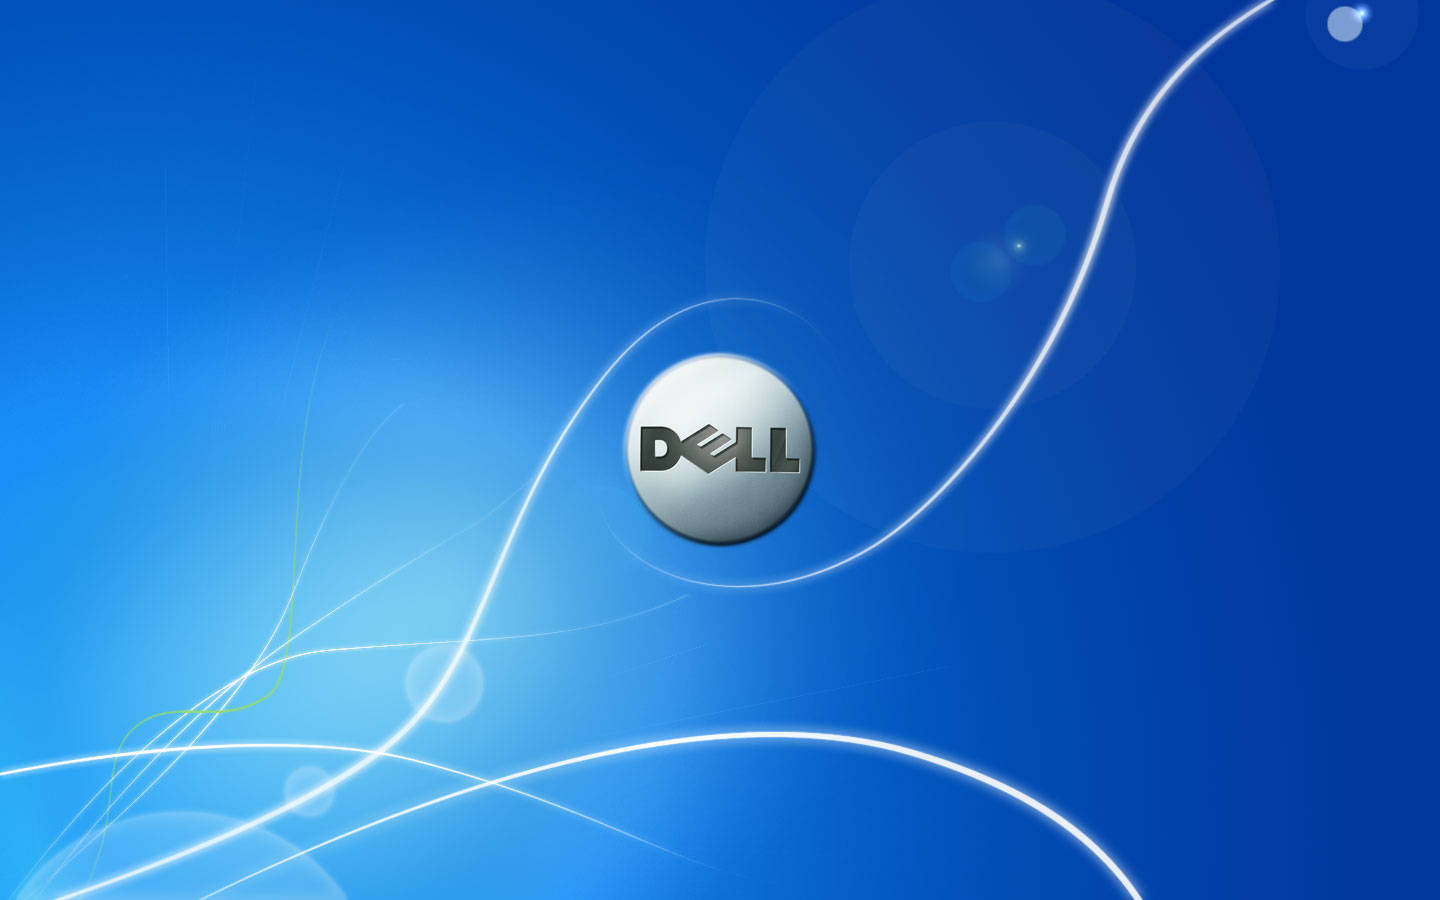 Với chất lượng hình ảnh sắc nét và chân thực, hình nền Dell HD chắc chắn sẽ mang đến trải nghiệm tuyệt vời cho bạn. Những hình ảnh đầy màu sắc sẽ làm cho màn hình máy tính của bạn trở nên sinh động hơn bao giờ hết. Nhanh tay lựa chọn cho mình một bức ảnh yêu thích và cập nhật ngay hình nền cho máy tính Dell của bạn nhé!